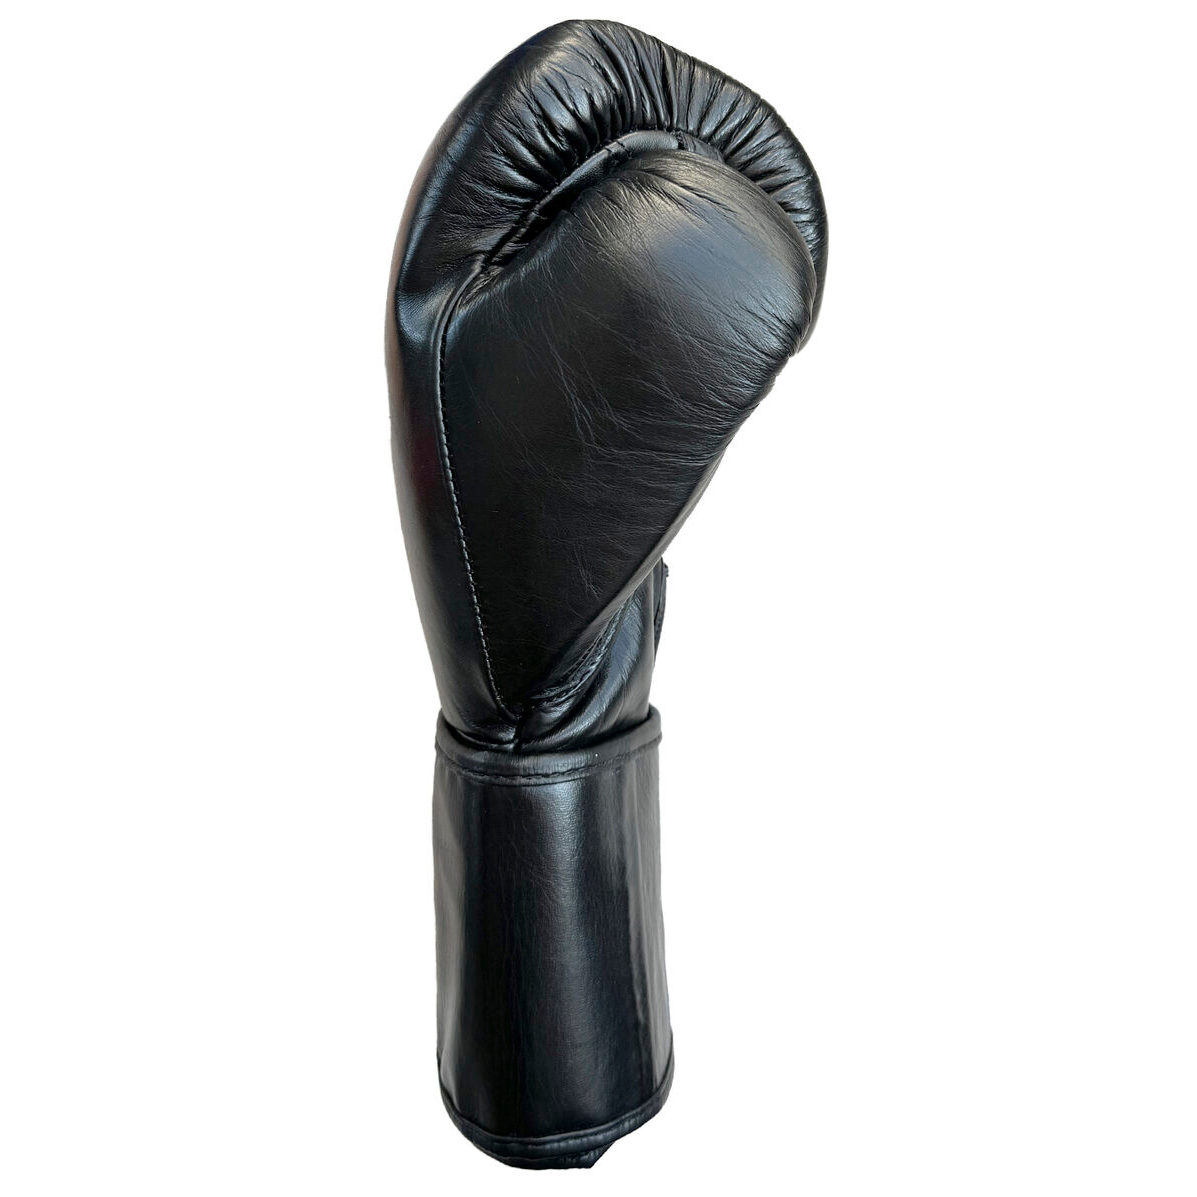  Боксерские перчатки Infinite Force Symbiote черные 